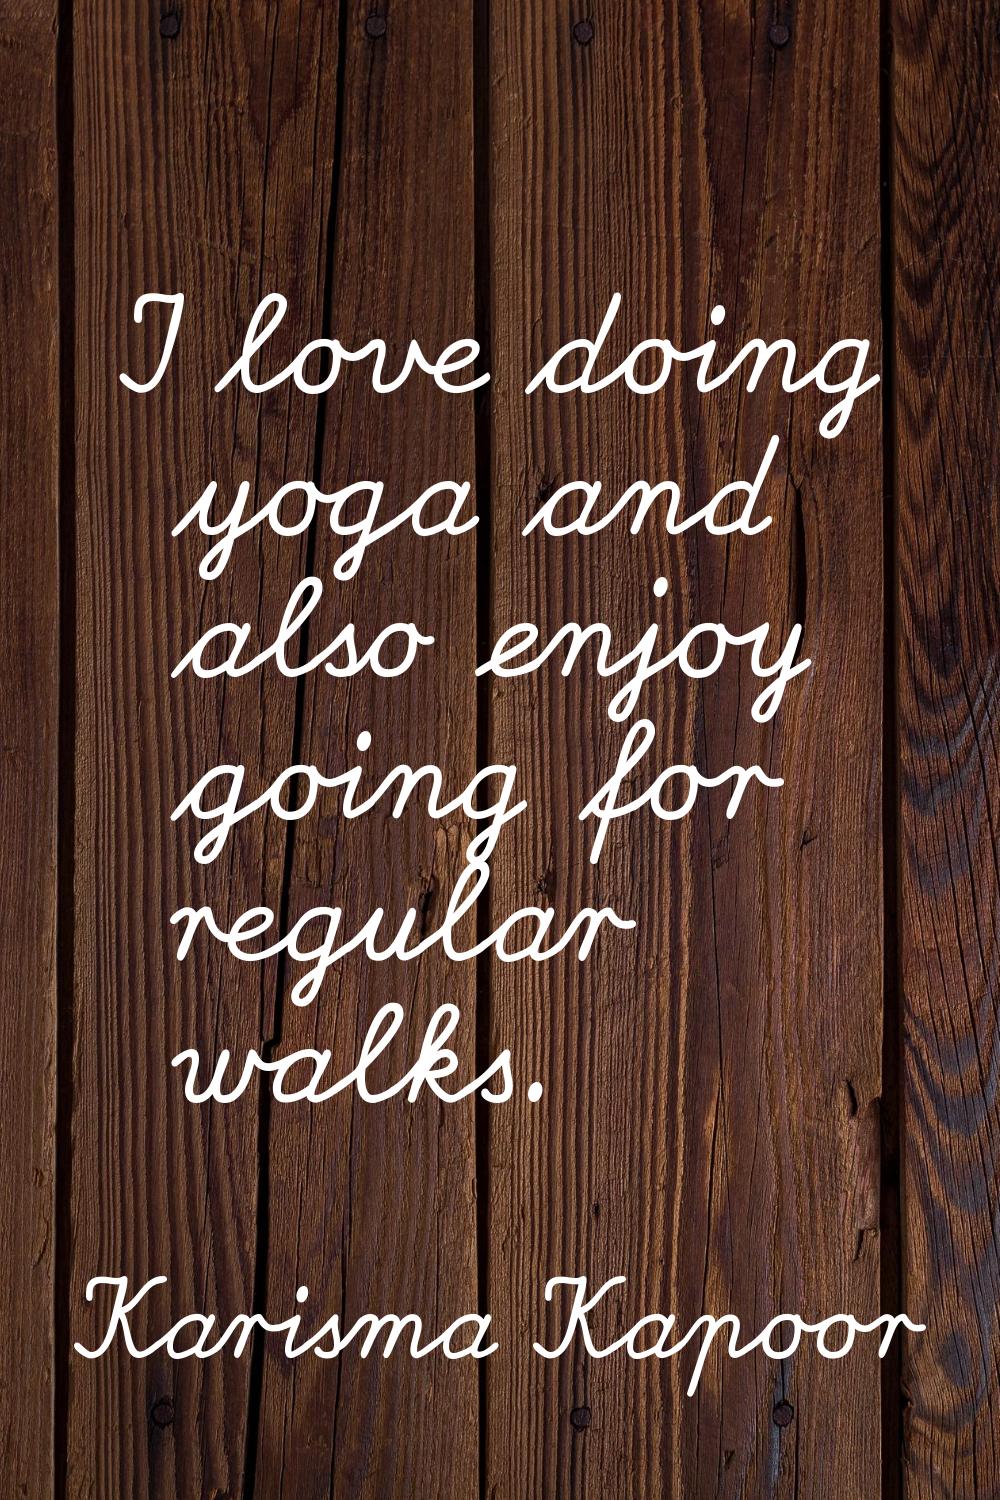 I love doing yoga and also enjoy going for regular walks.